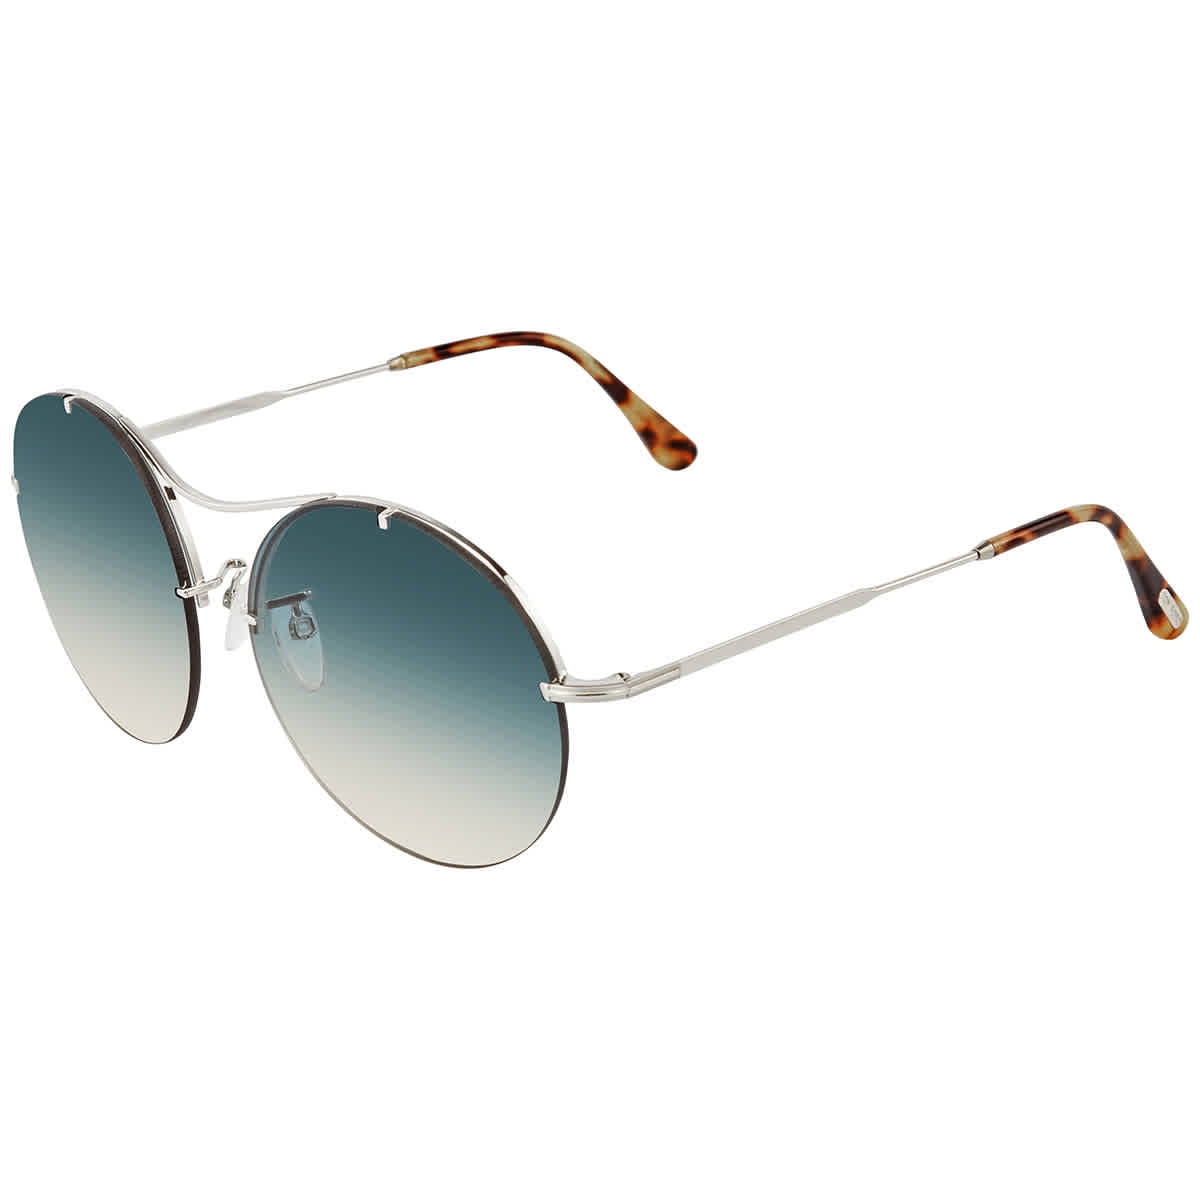 Tom Veronique Green Gradient Round Ladies Sunglasses FT0565 18P -